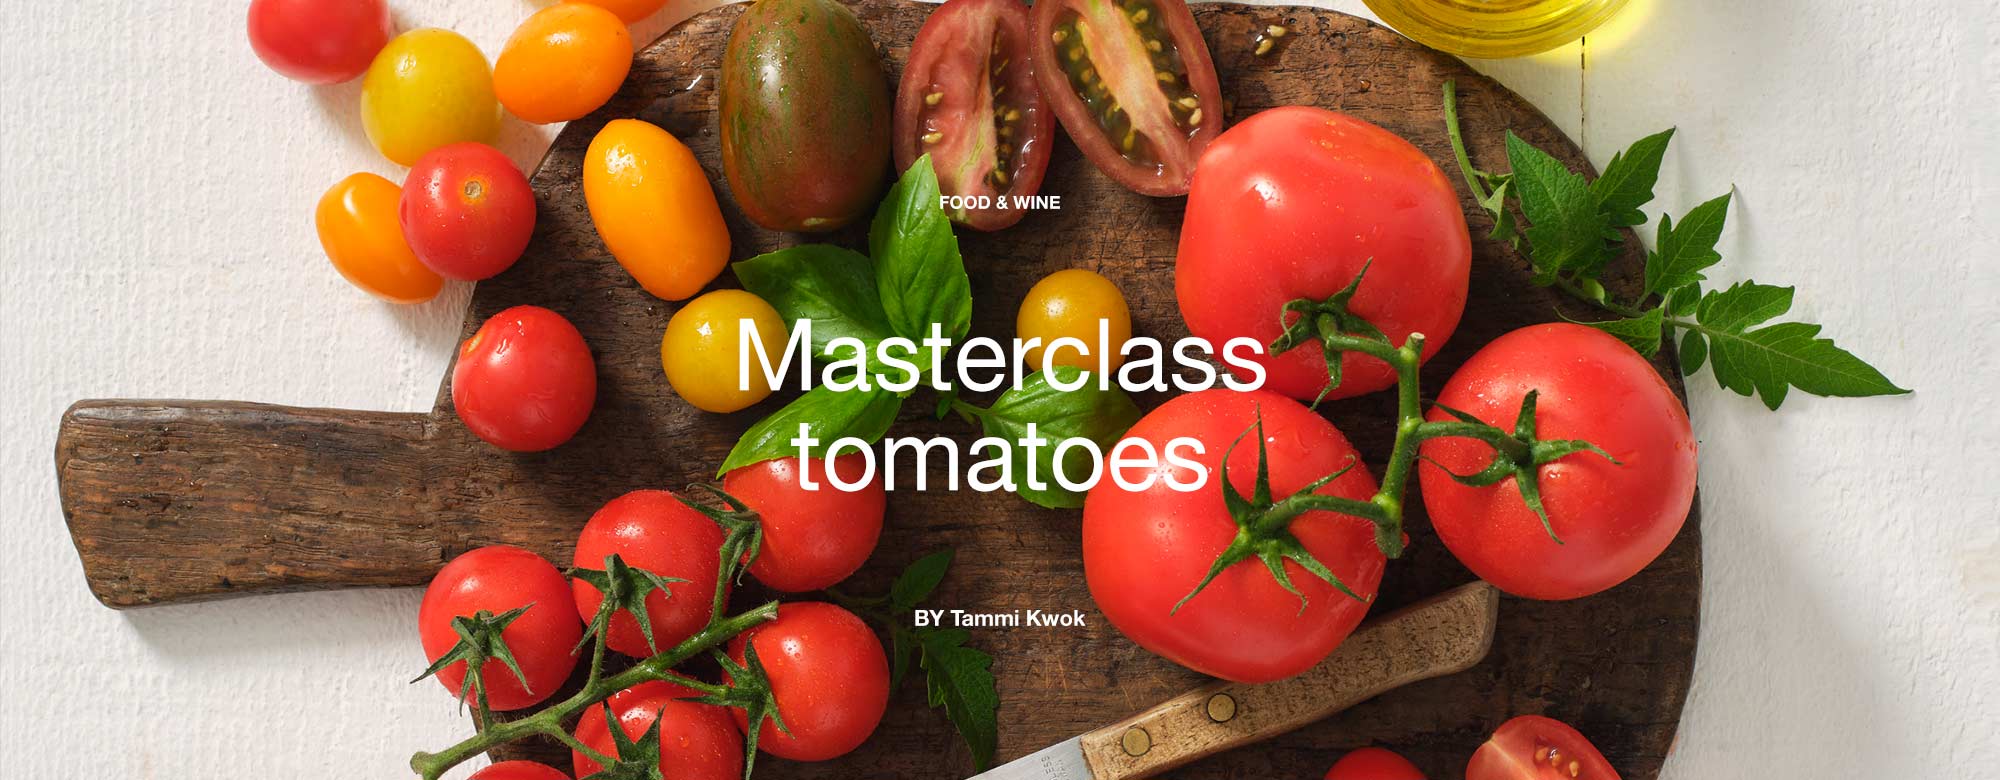 Masterclass tomatoes